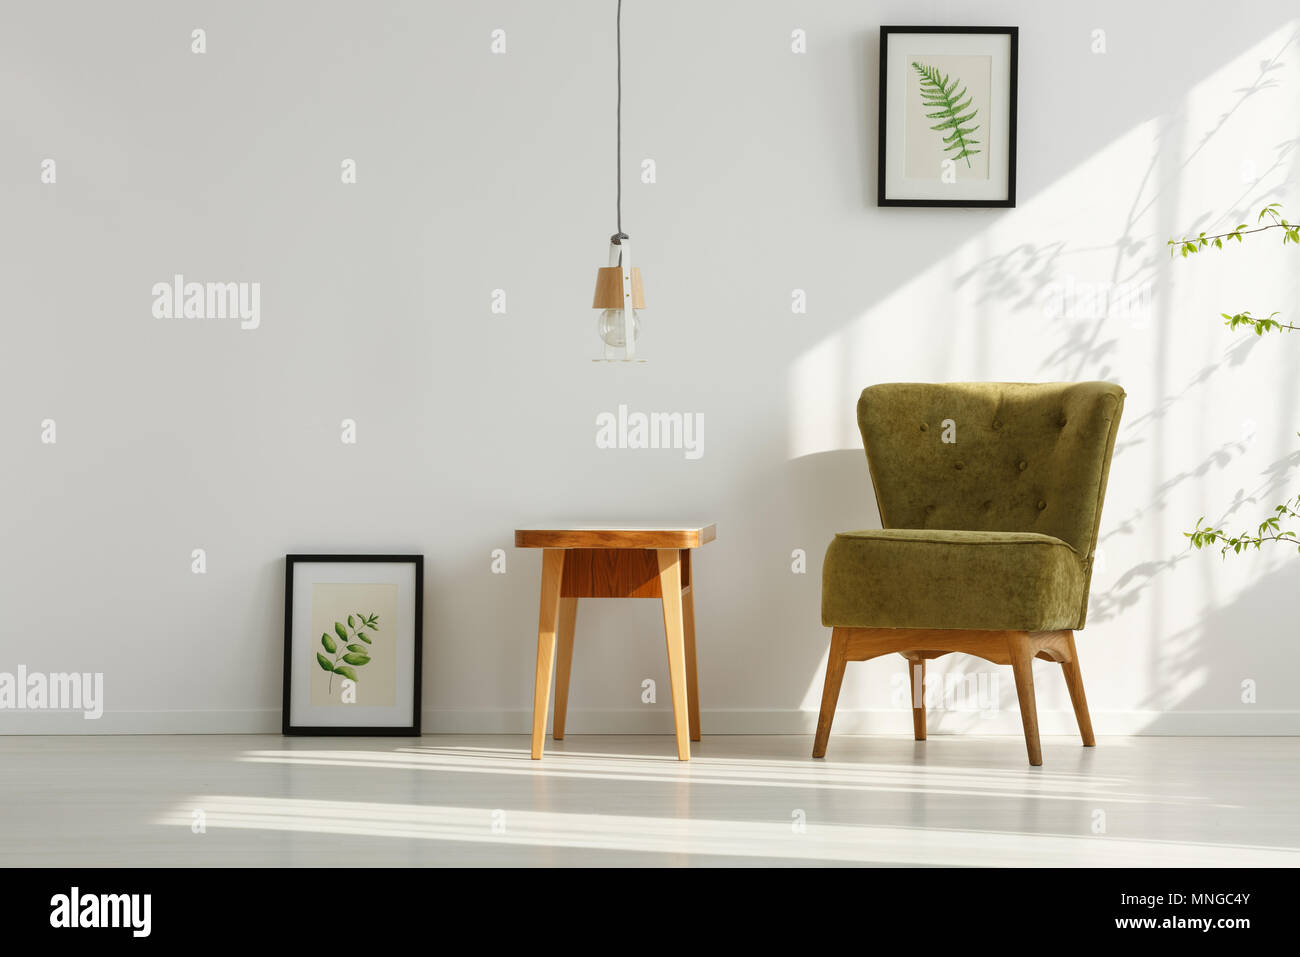 Chambre blanche avec fauteuil, table en bois vert et affiches botanique Banque D'Images